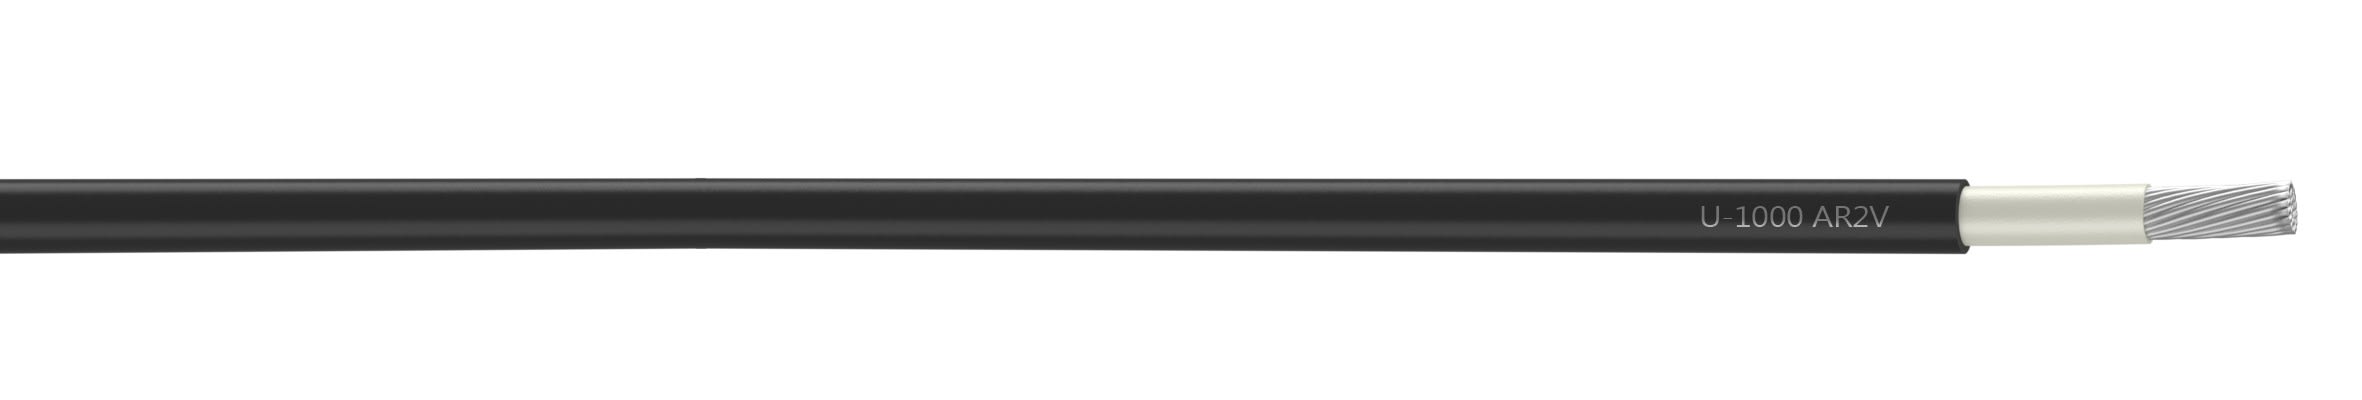 Nexans - Câble rigide U-1000 AR2V aluminium 1x70 longueur à la coupe